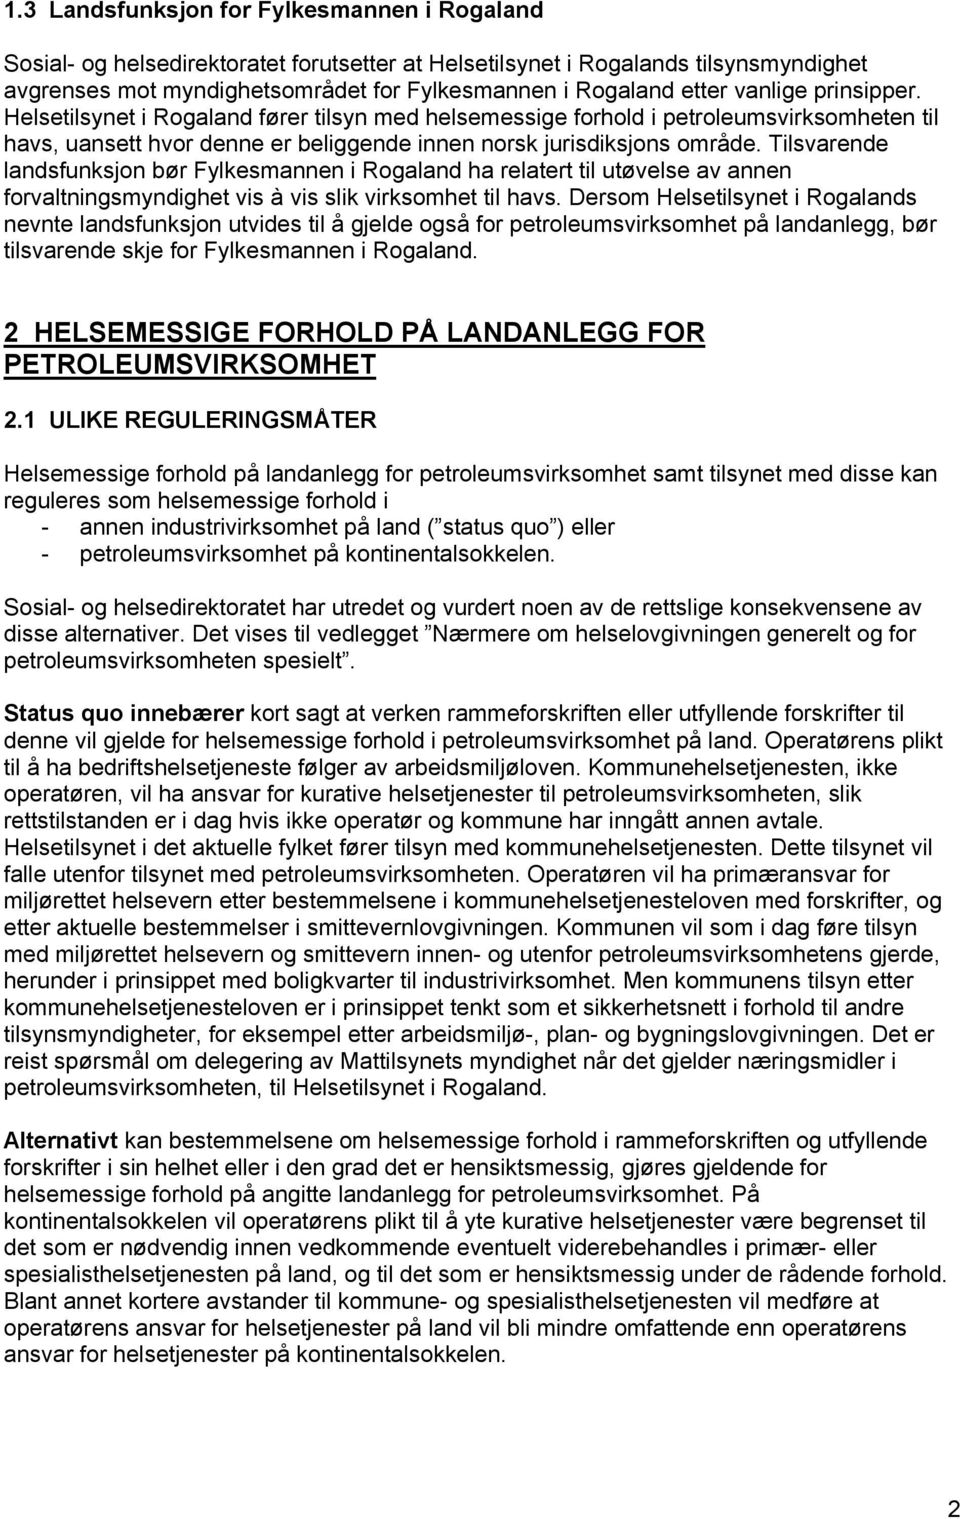 Tilsvarende landsfunksjon bør Fylkesmannen i Rogaland ha relatert til utøvelse av annen forvaltningsmyndighet vis à vis slik virksomhet til havs.